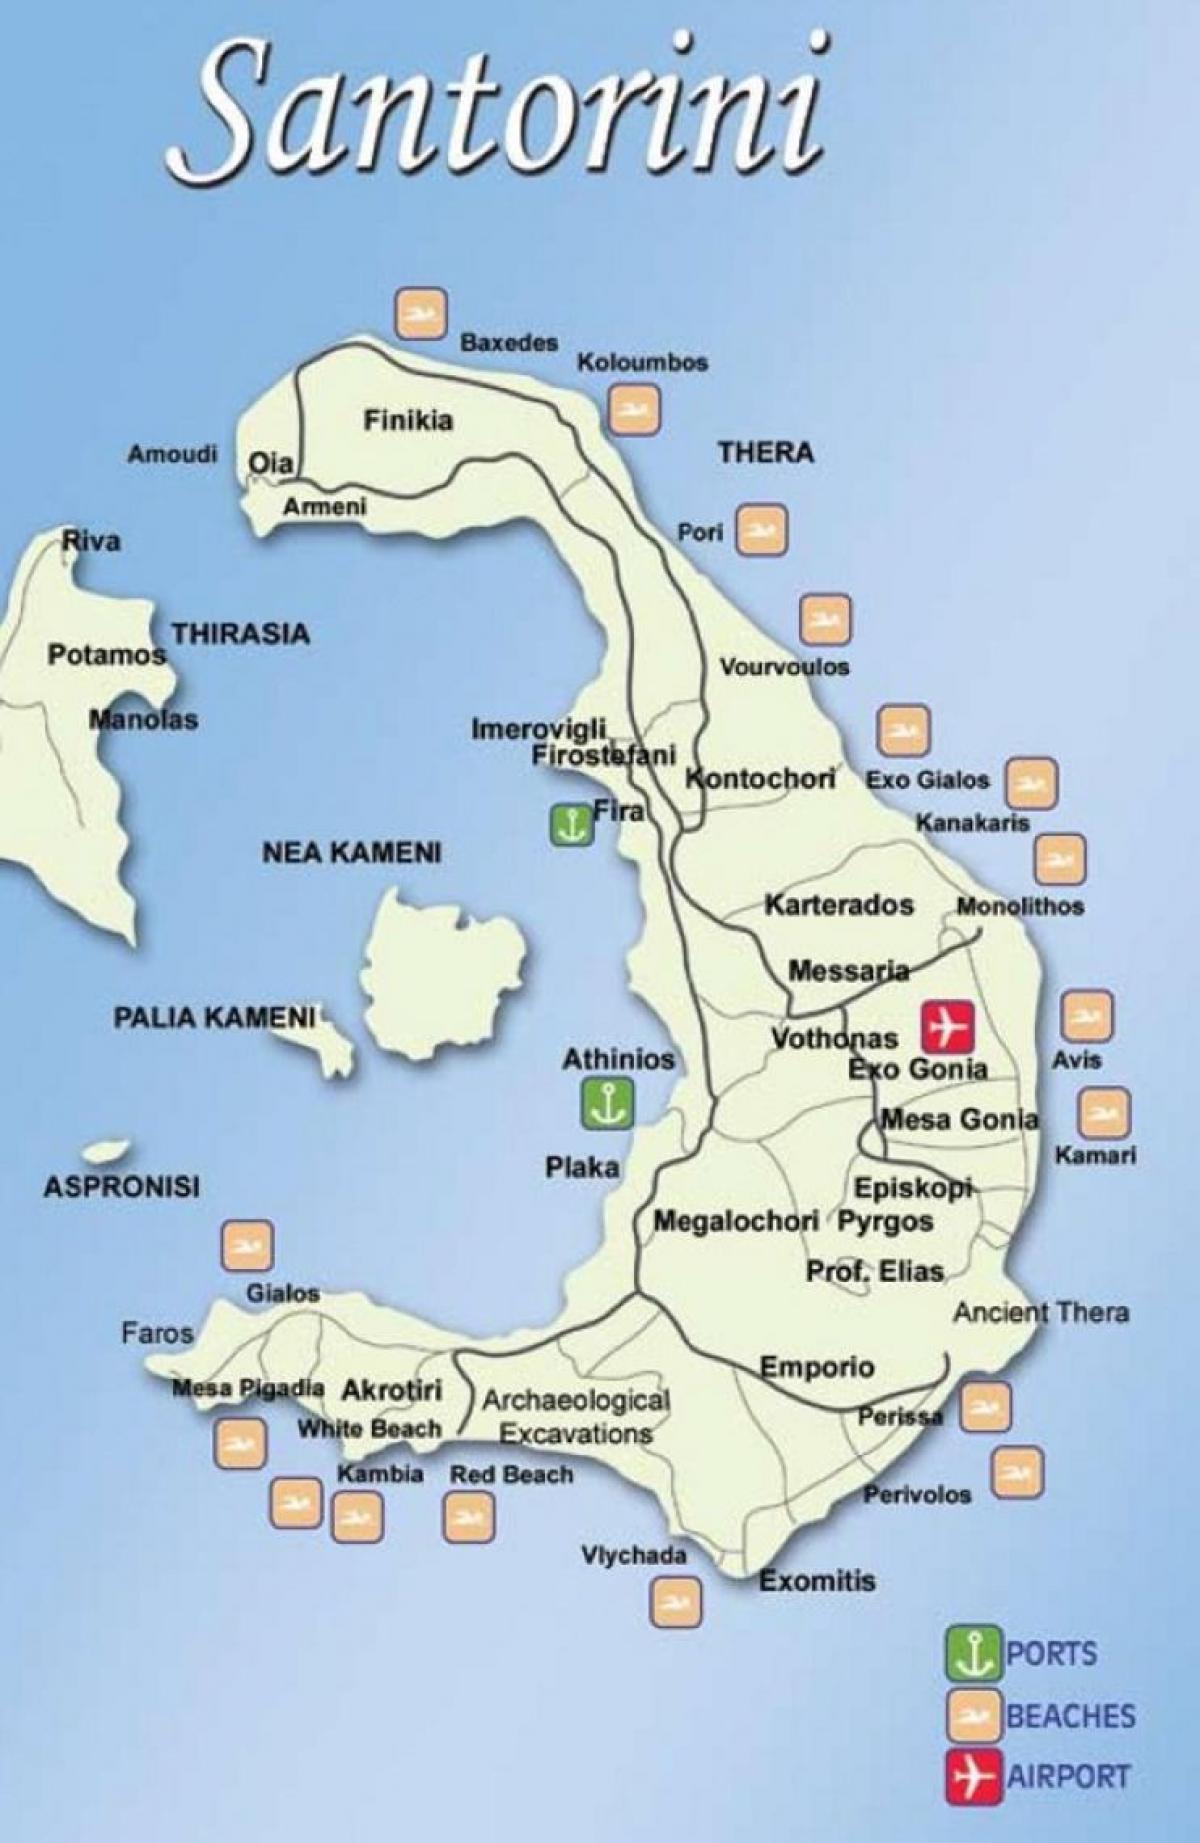 Grekiska öarna karta Santorini - Karta över grekiska öarna Santorini